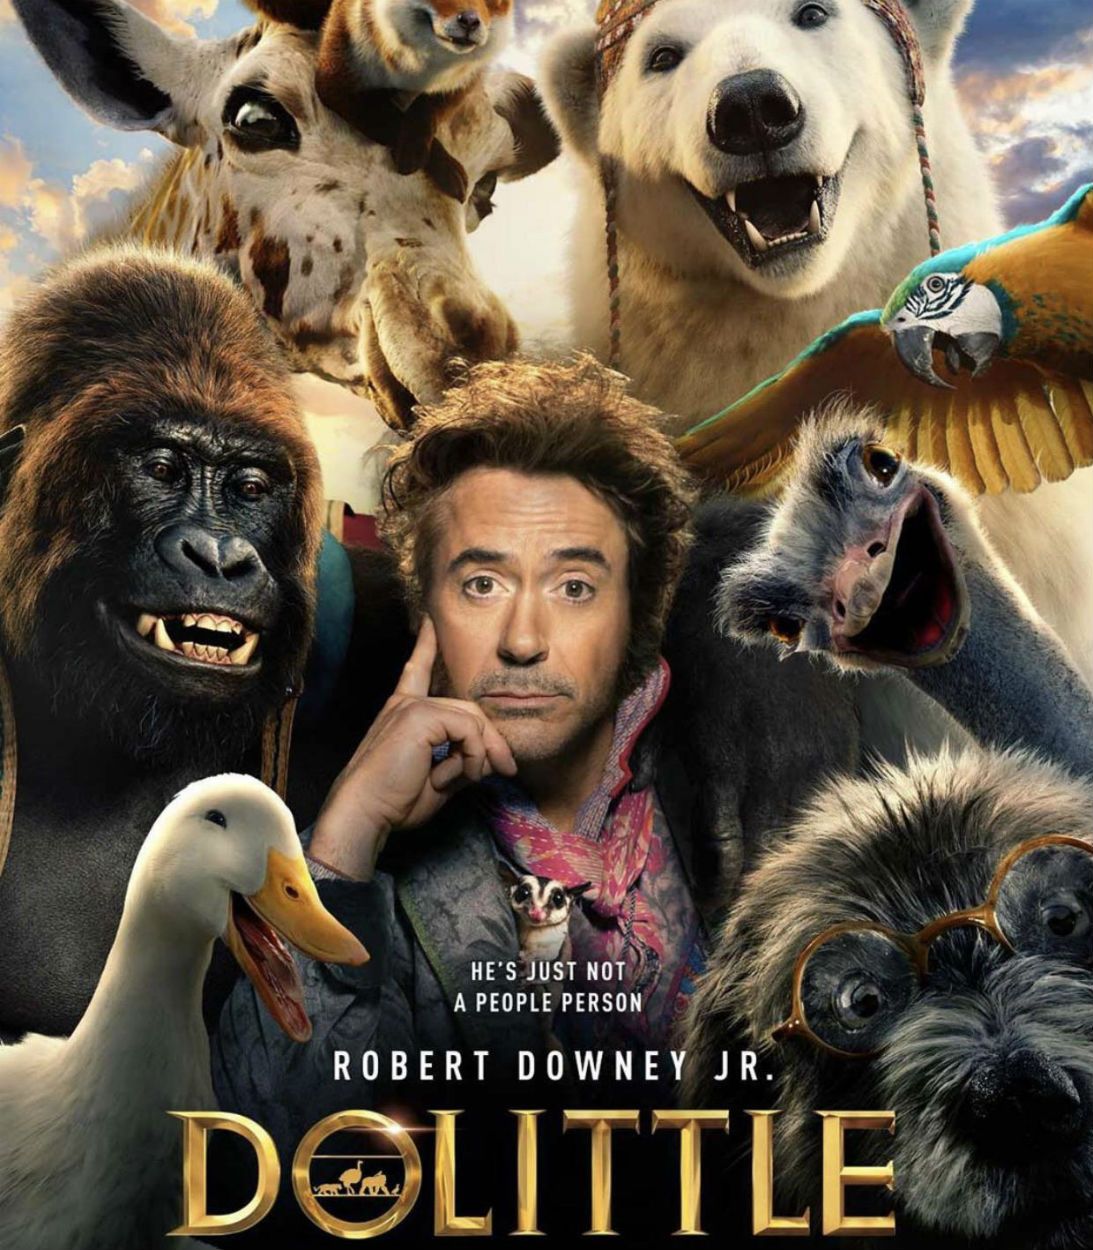 Robert Downey Jr Dolittle Movie Poster Vertical TLDR